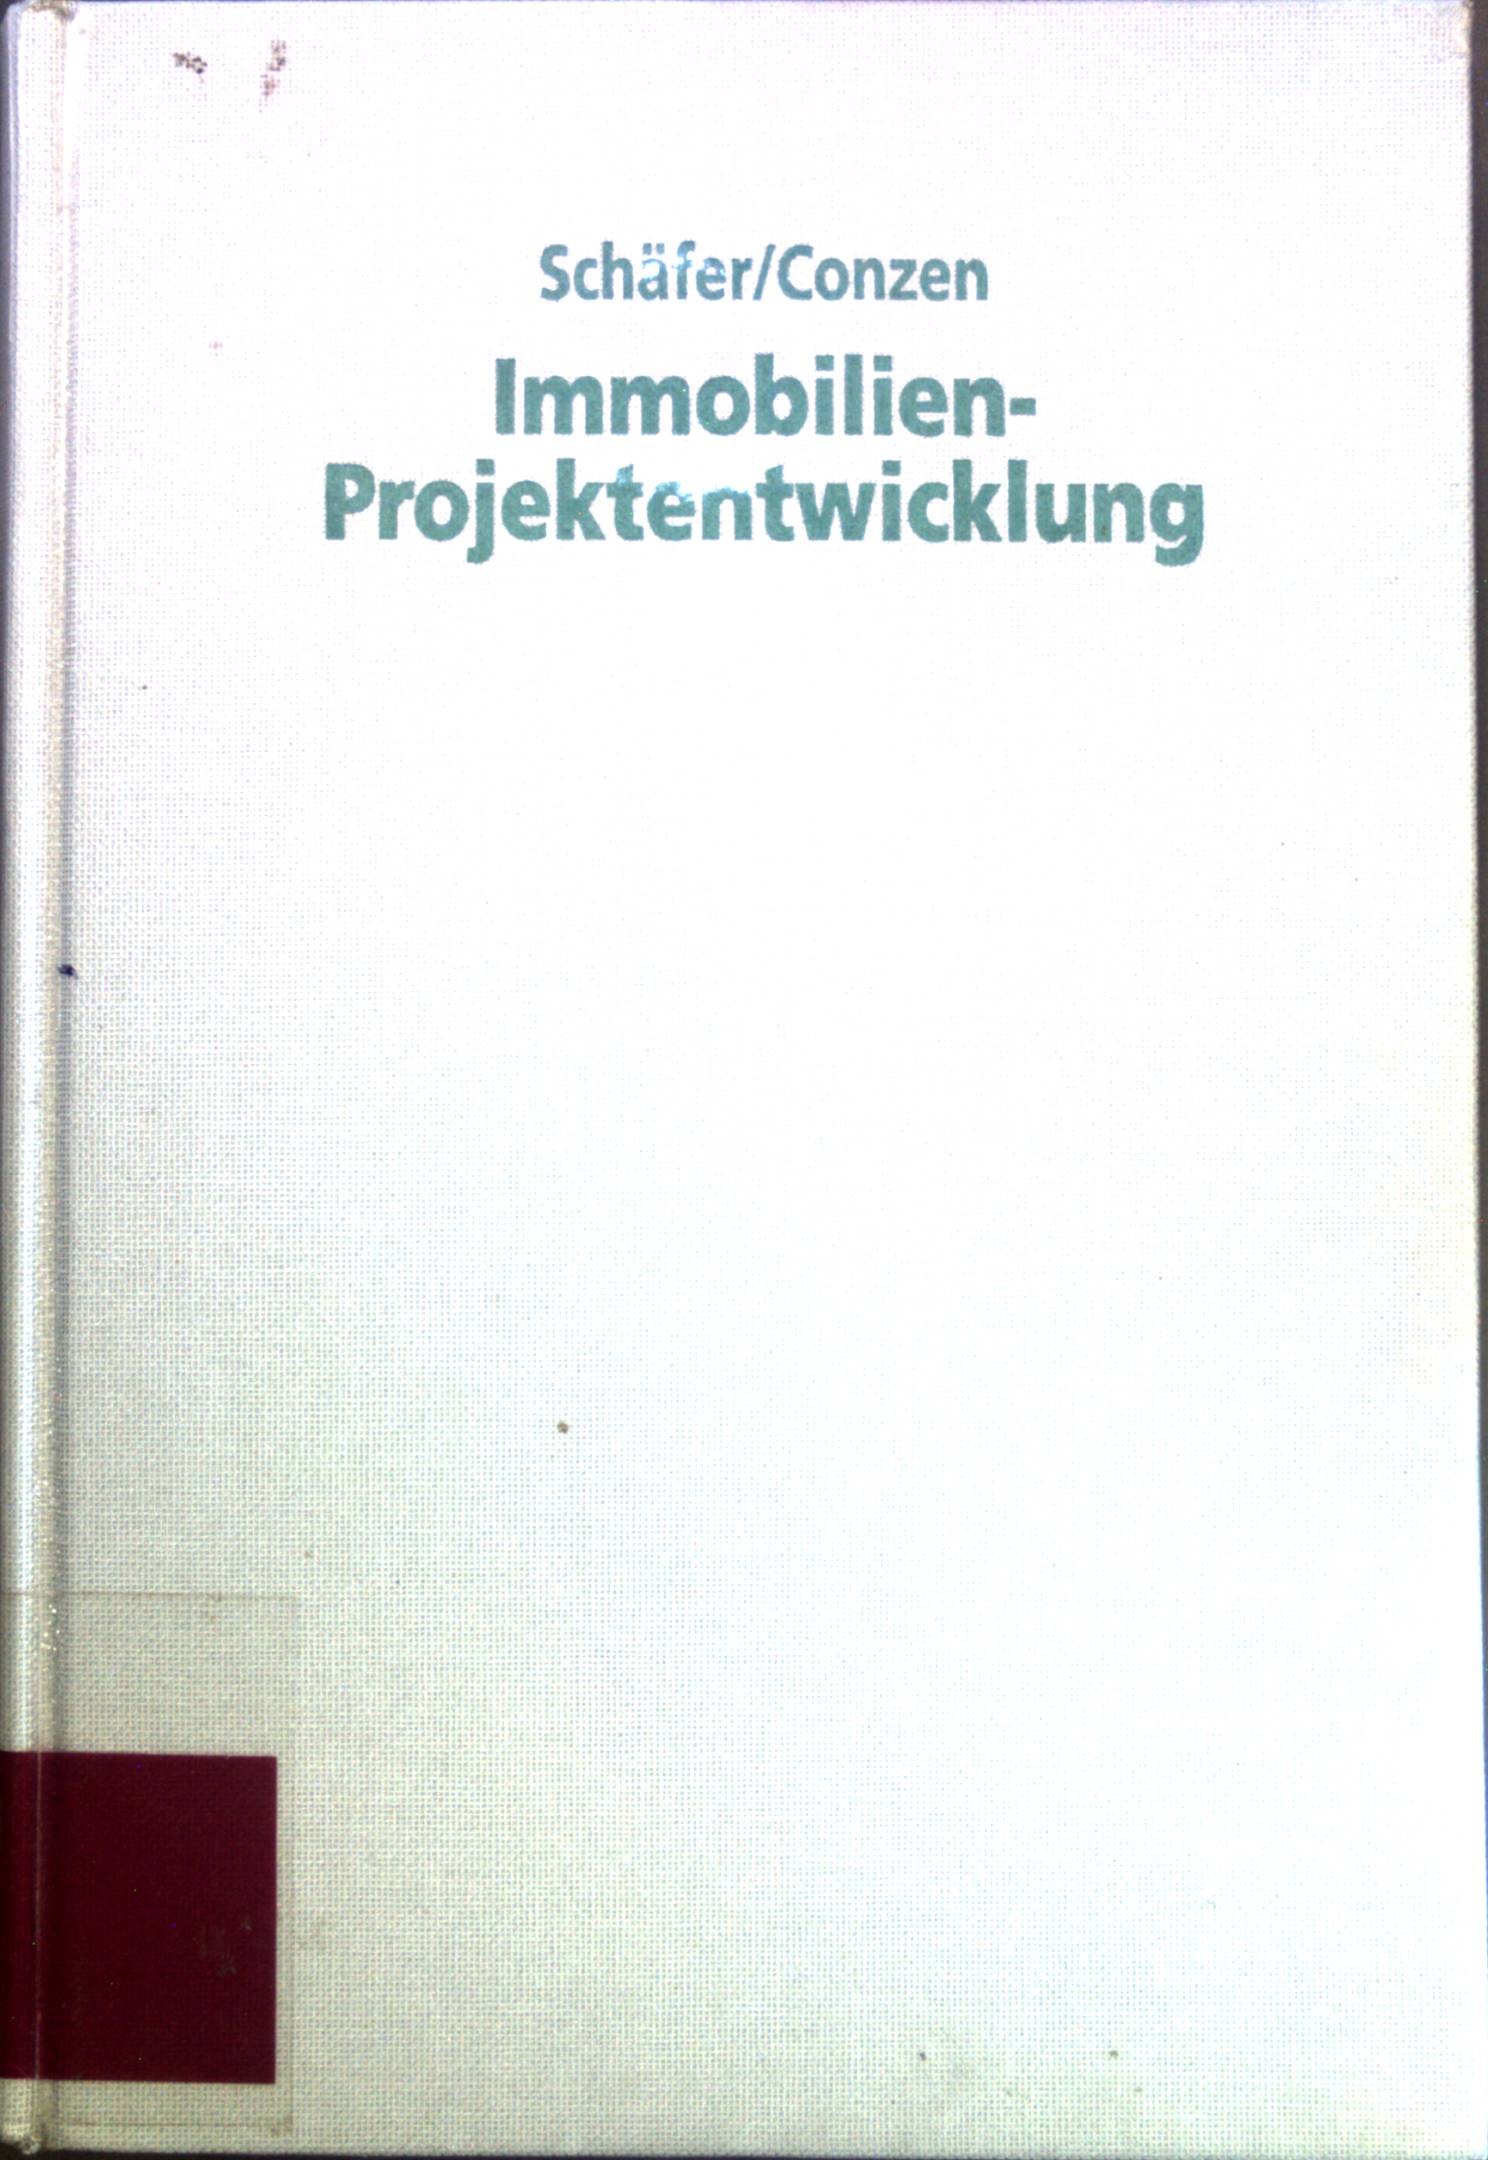 Praxisbuch der Immobilien - Projektentwicklung. - Schaefer, Jürgen und Georg Conzen